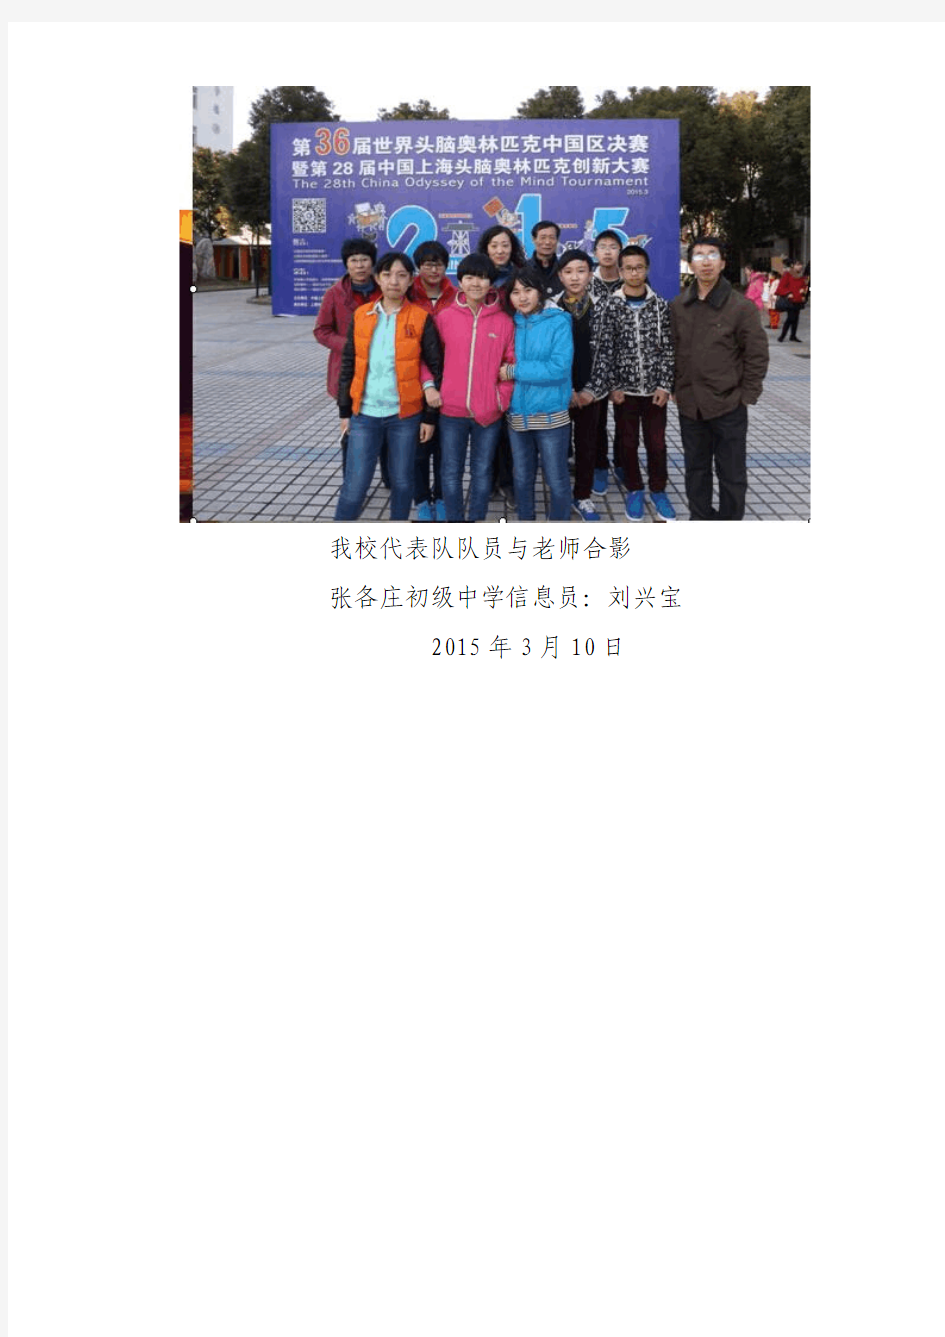 张各庄初级中学代表队参加第36届世界头脑奥林匹克大赛中国区决赛载誉归来(2015年3月第1号)(xian)